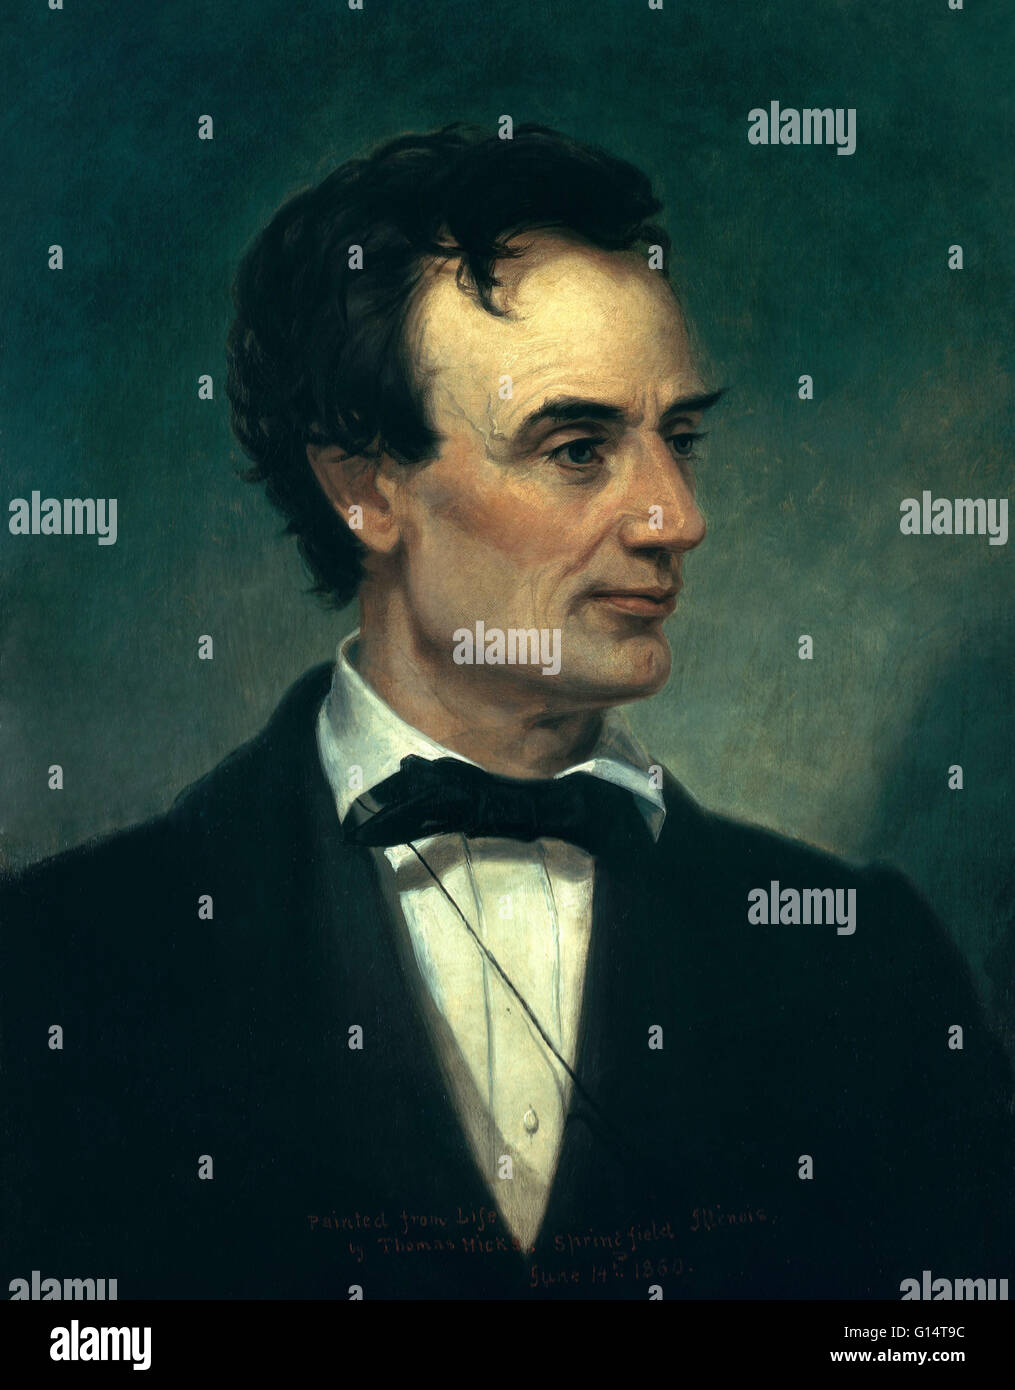 Gemälde von Lincoln von Thomas Hicks im Jahre 1860 in Springfield, Illinois. Abraham Lincoln (12. Februar 1809 - 15. April 1865) war der 16. Präsident der Vereinigten Staaten, von März 1861 bis zu seiner Ermordung im Jahre 1865. Er führte sein Land durch die Amerika Stockfoto